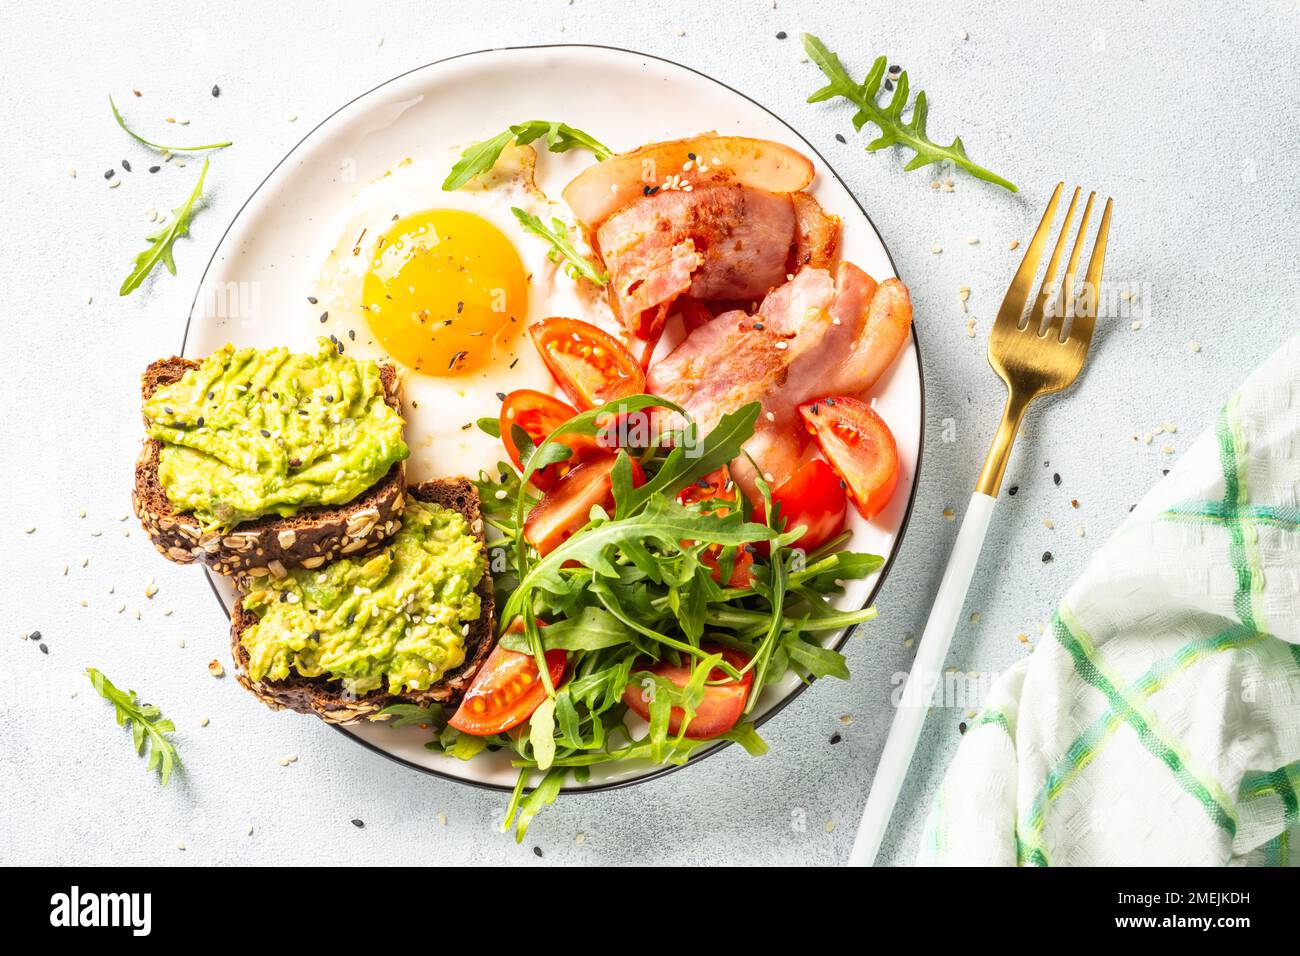 Gesundes Frühstück oder Mittagessen. Becon, Eier und frischer Salat. Stockfoto